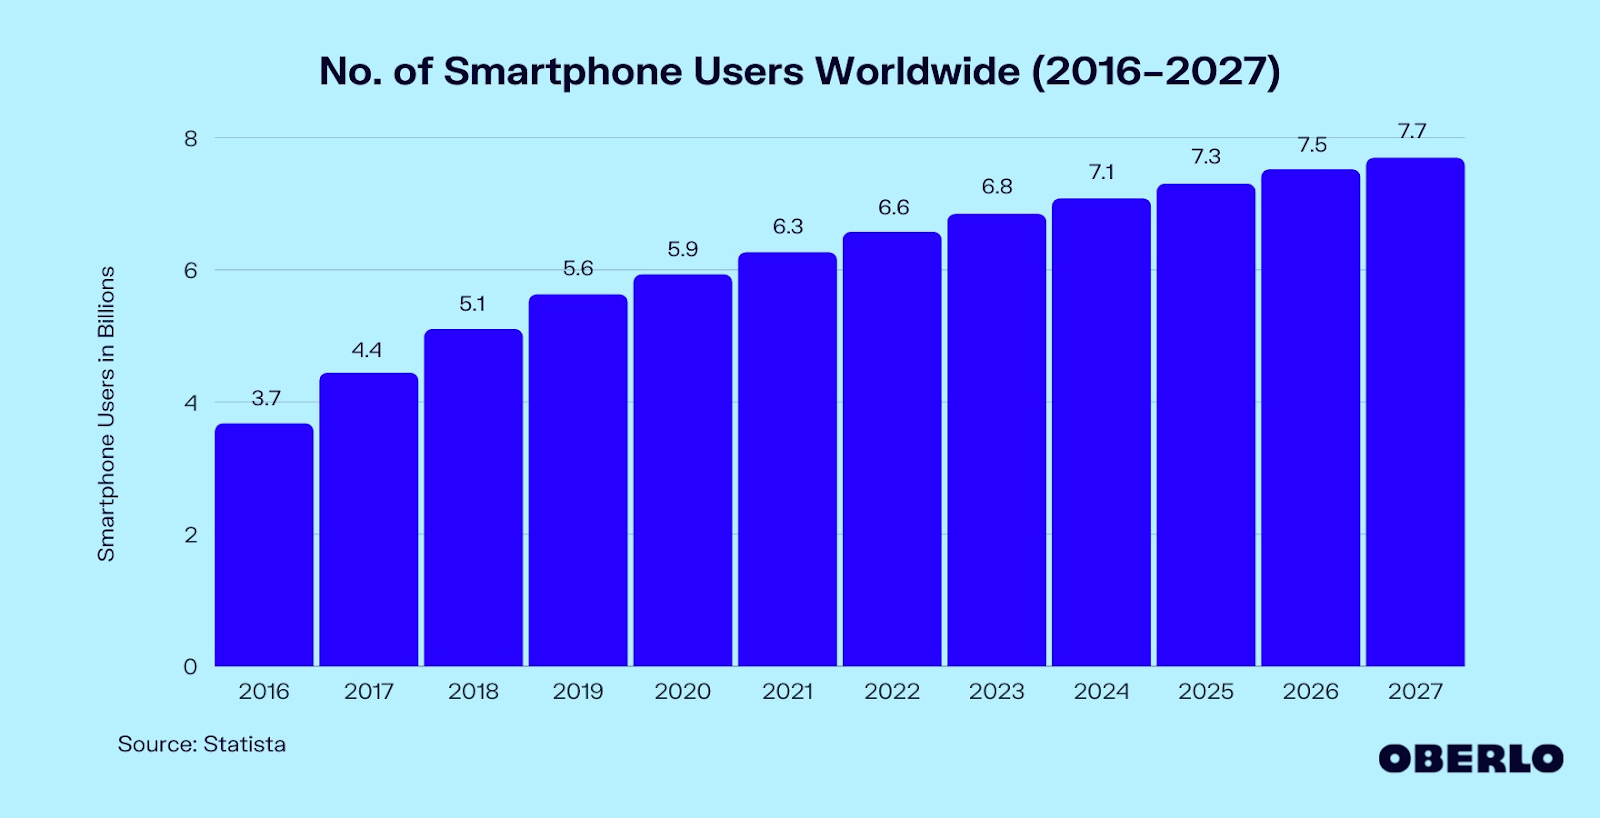 No. of smartphone users worldwide